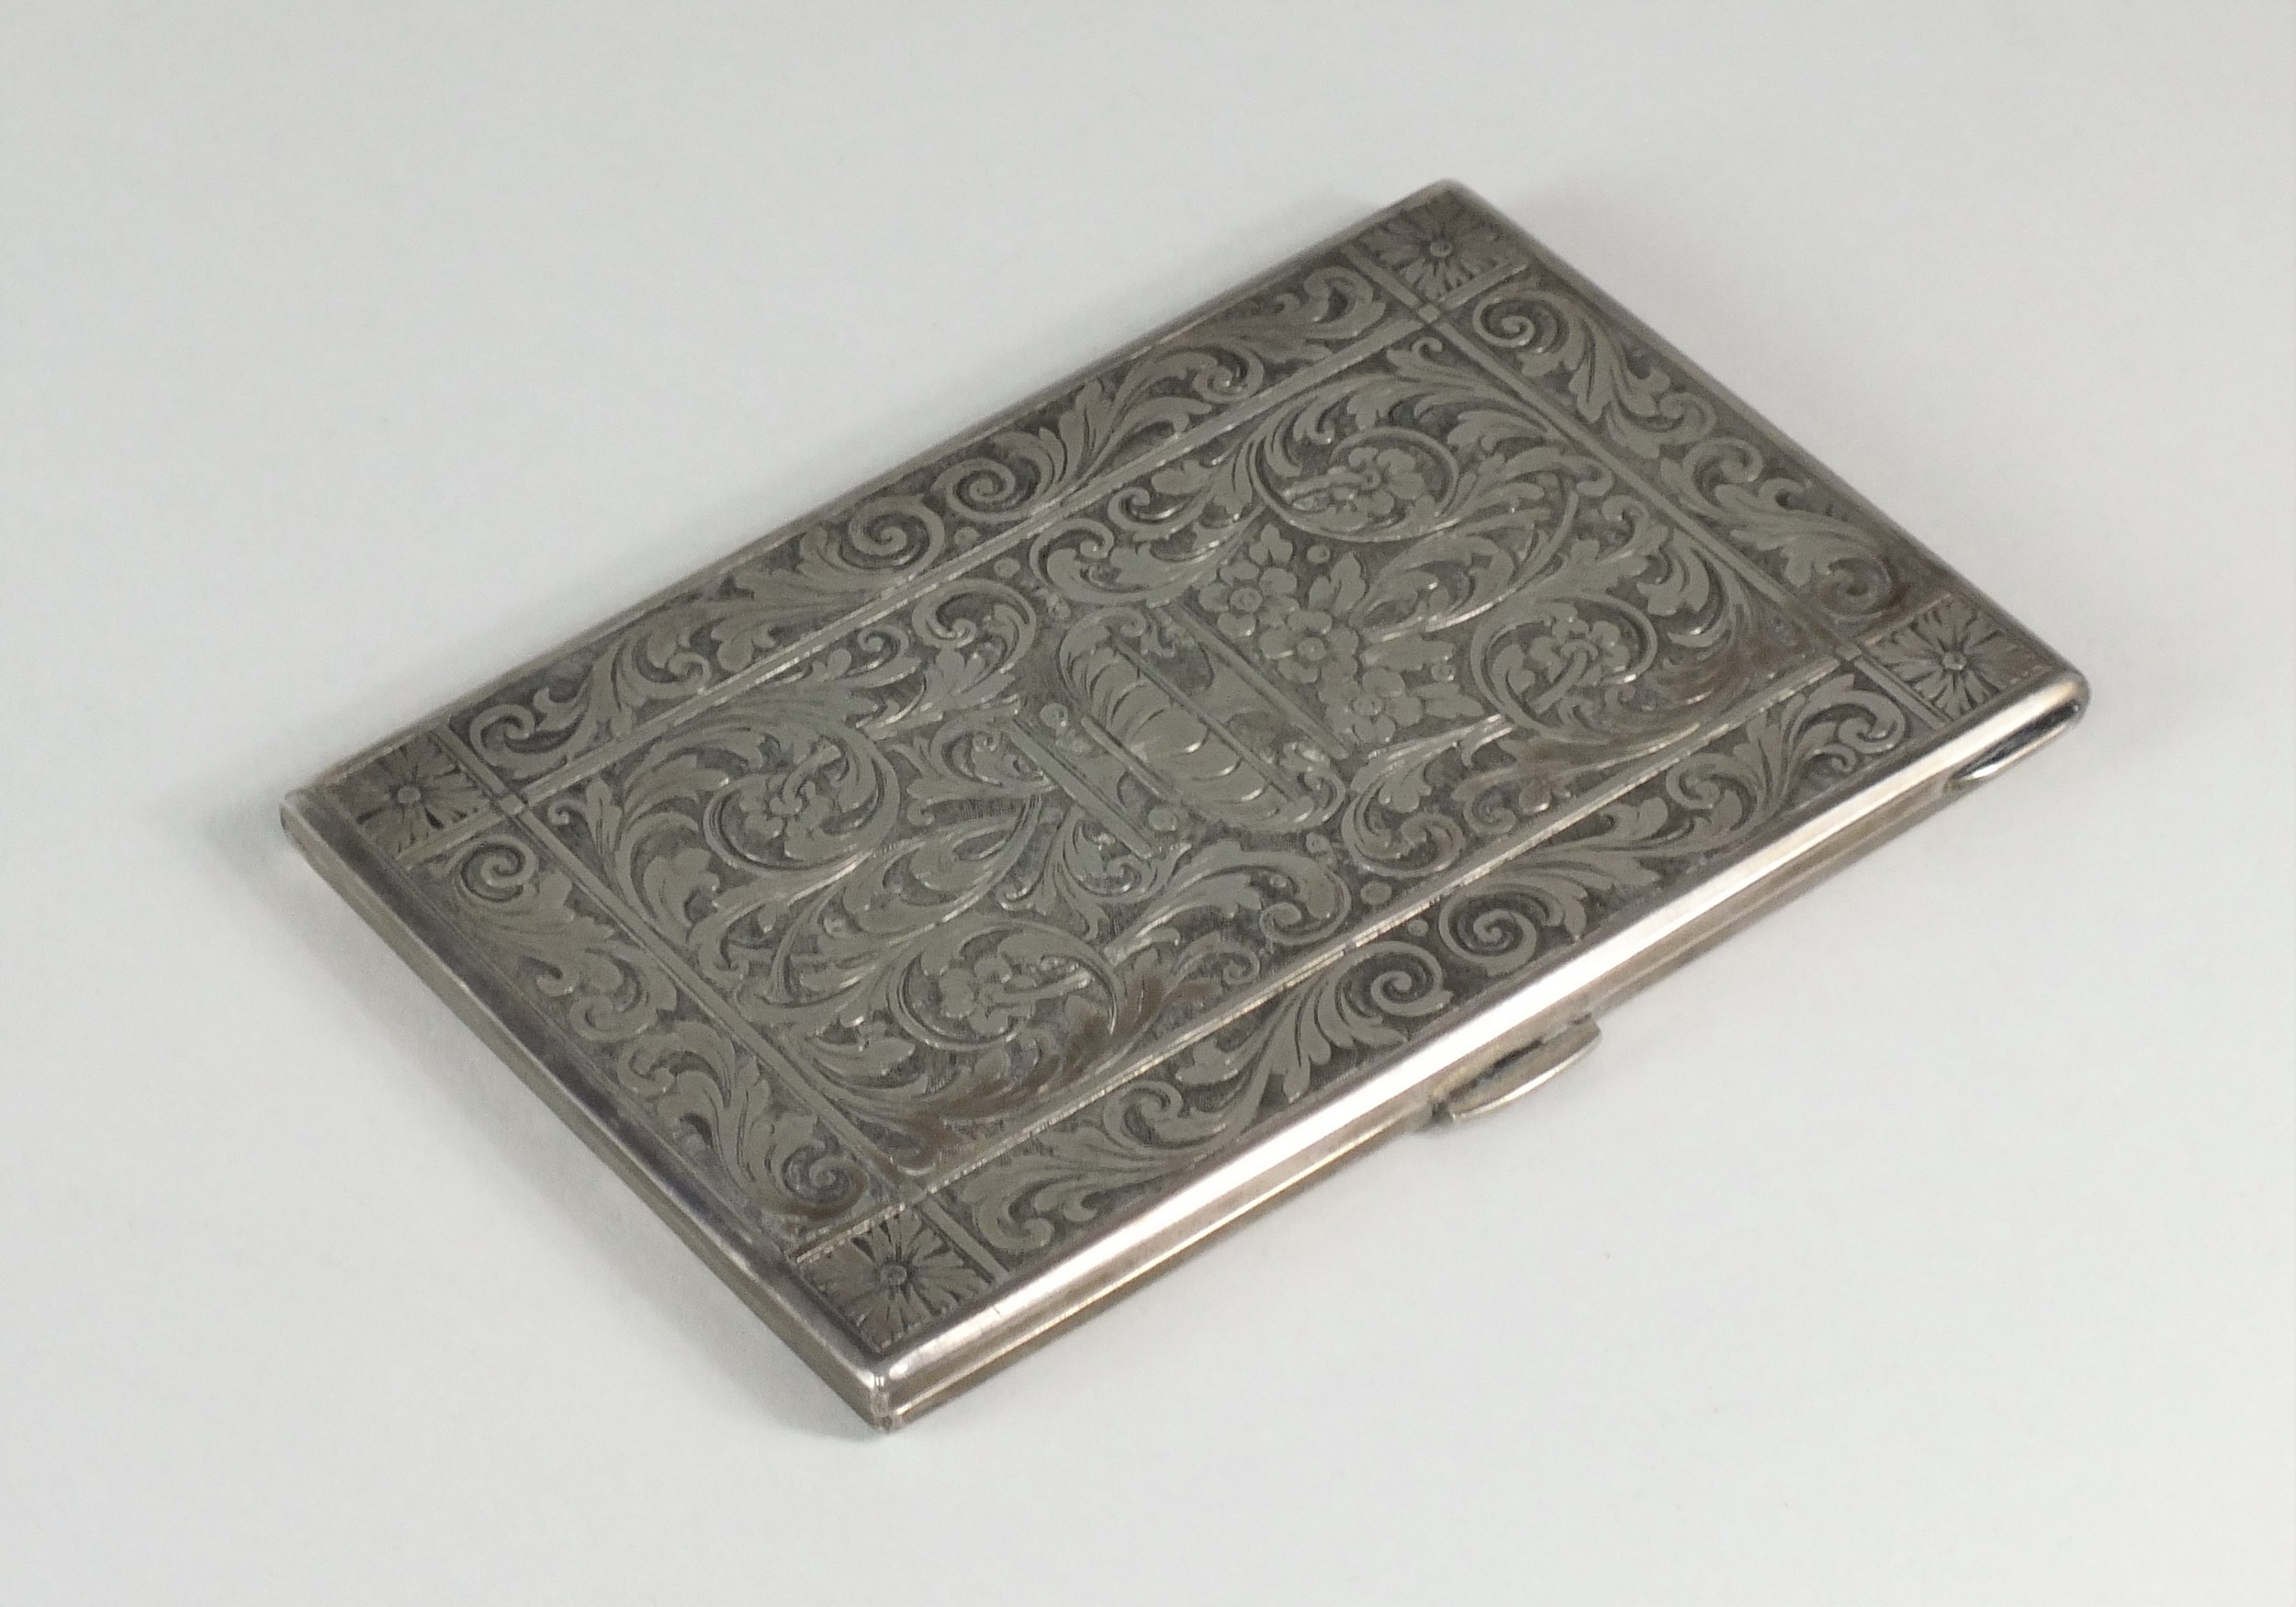 An Italian silver cigarette case, stamped 800 Halls Fine Art - Mussolini